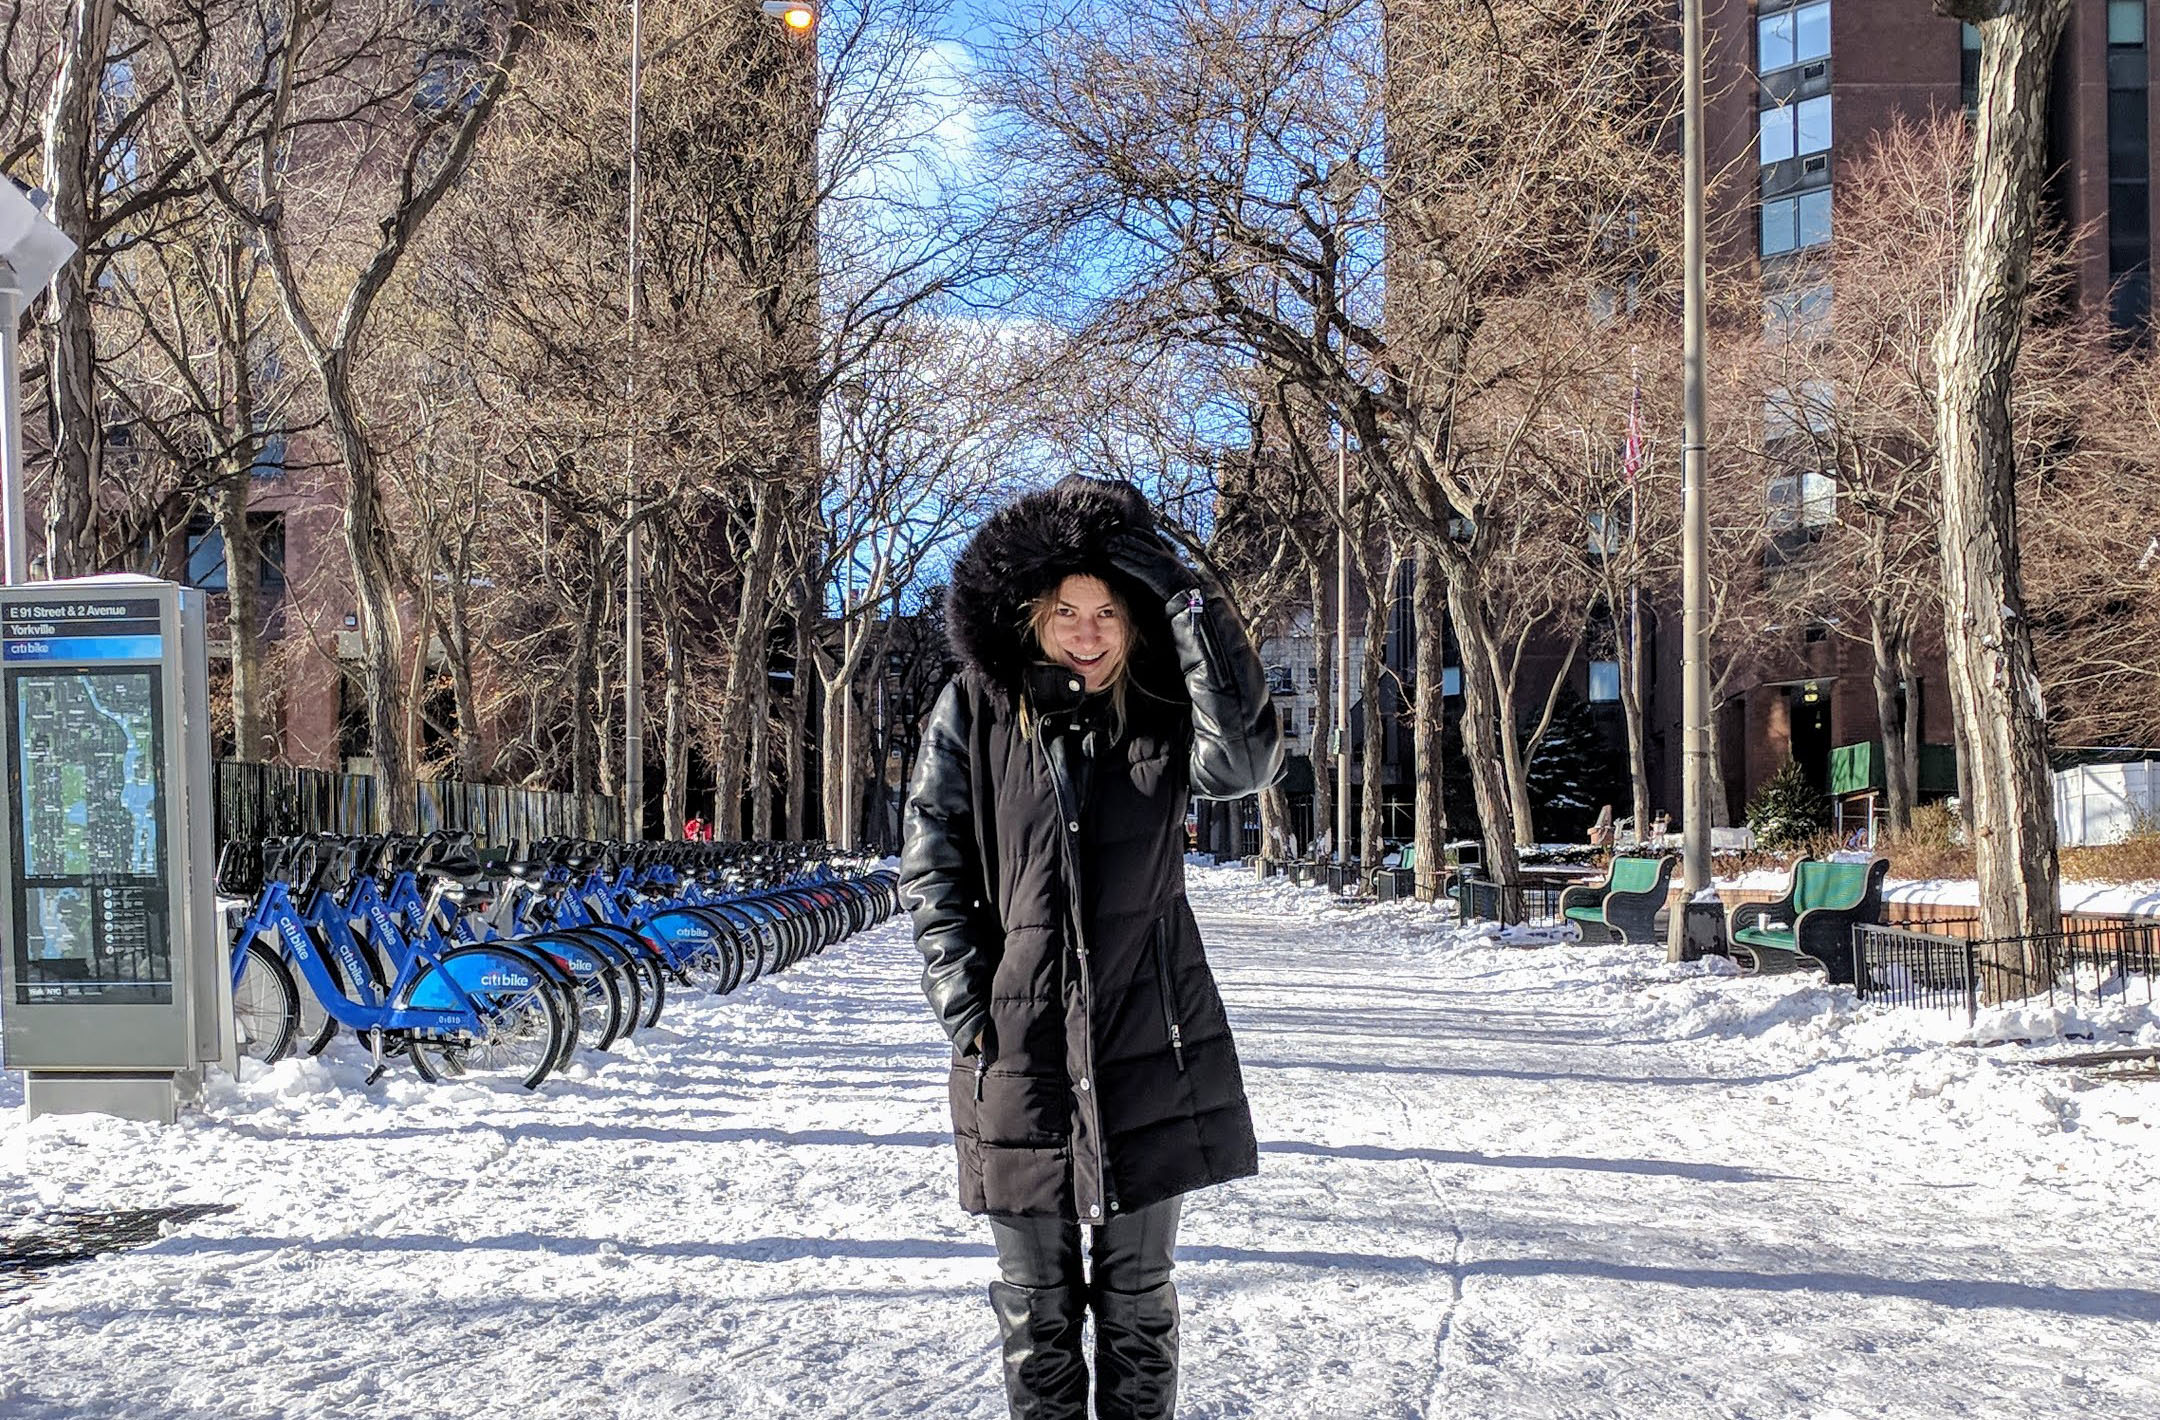 O que vestir no inverno em Nova York? Dicas e inspirações de looks